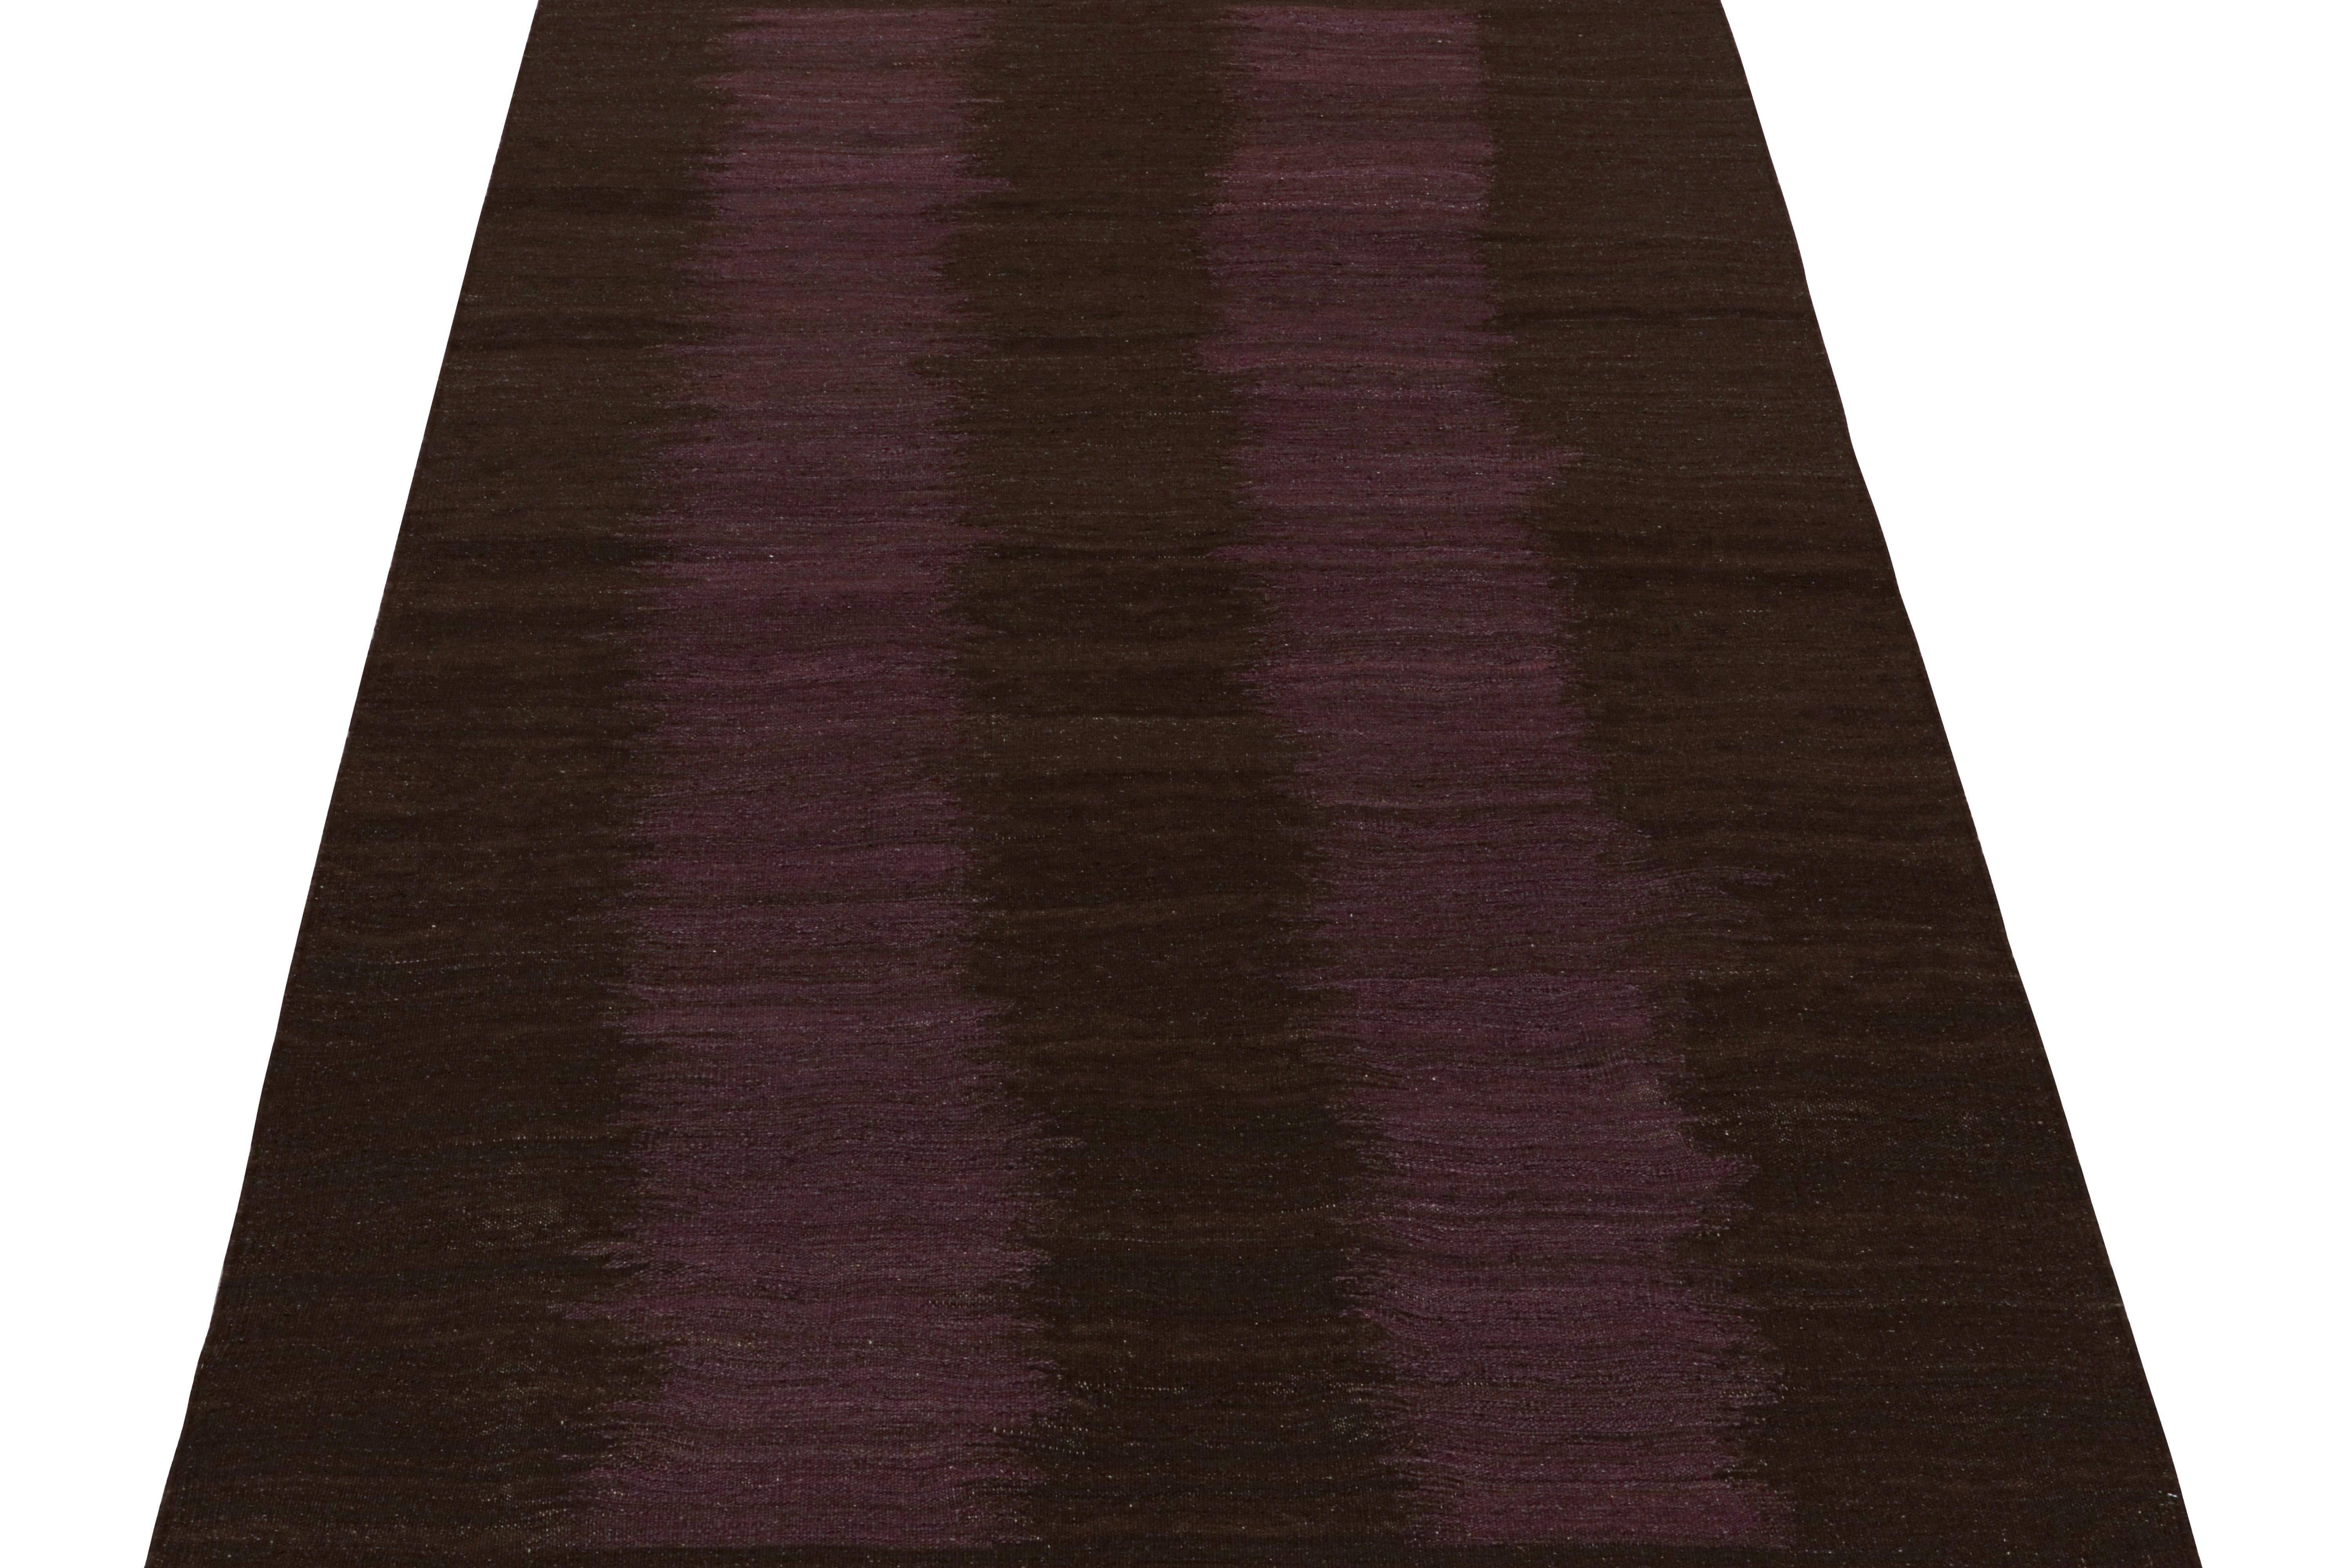 Ce tapis kilim contemporain de 5x8 est issu d'une nouvelle collection passionnante des tissages plats modernes de Rug & Kilim. 

Tissé à la main en laine, ce nouveau style de notre Collection 